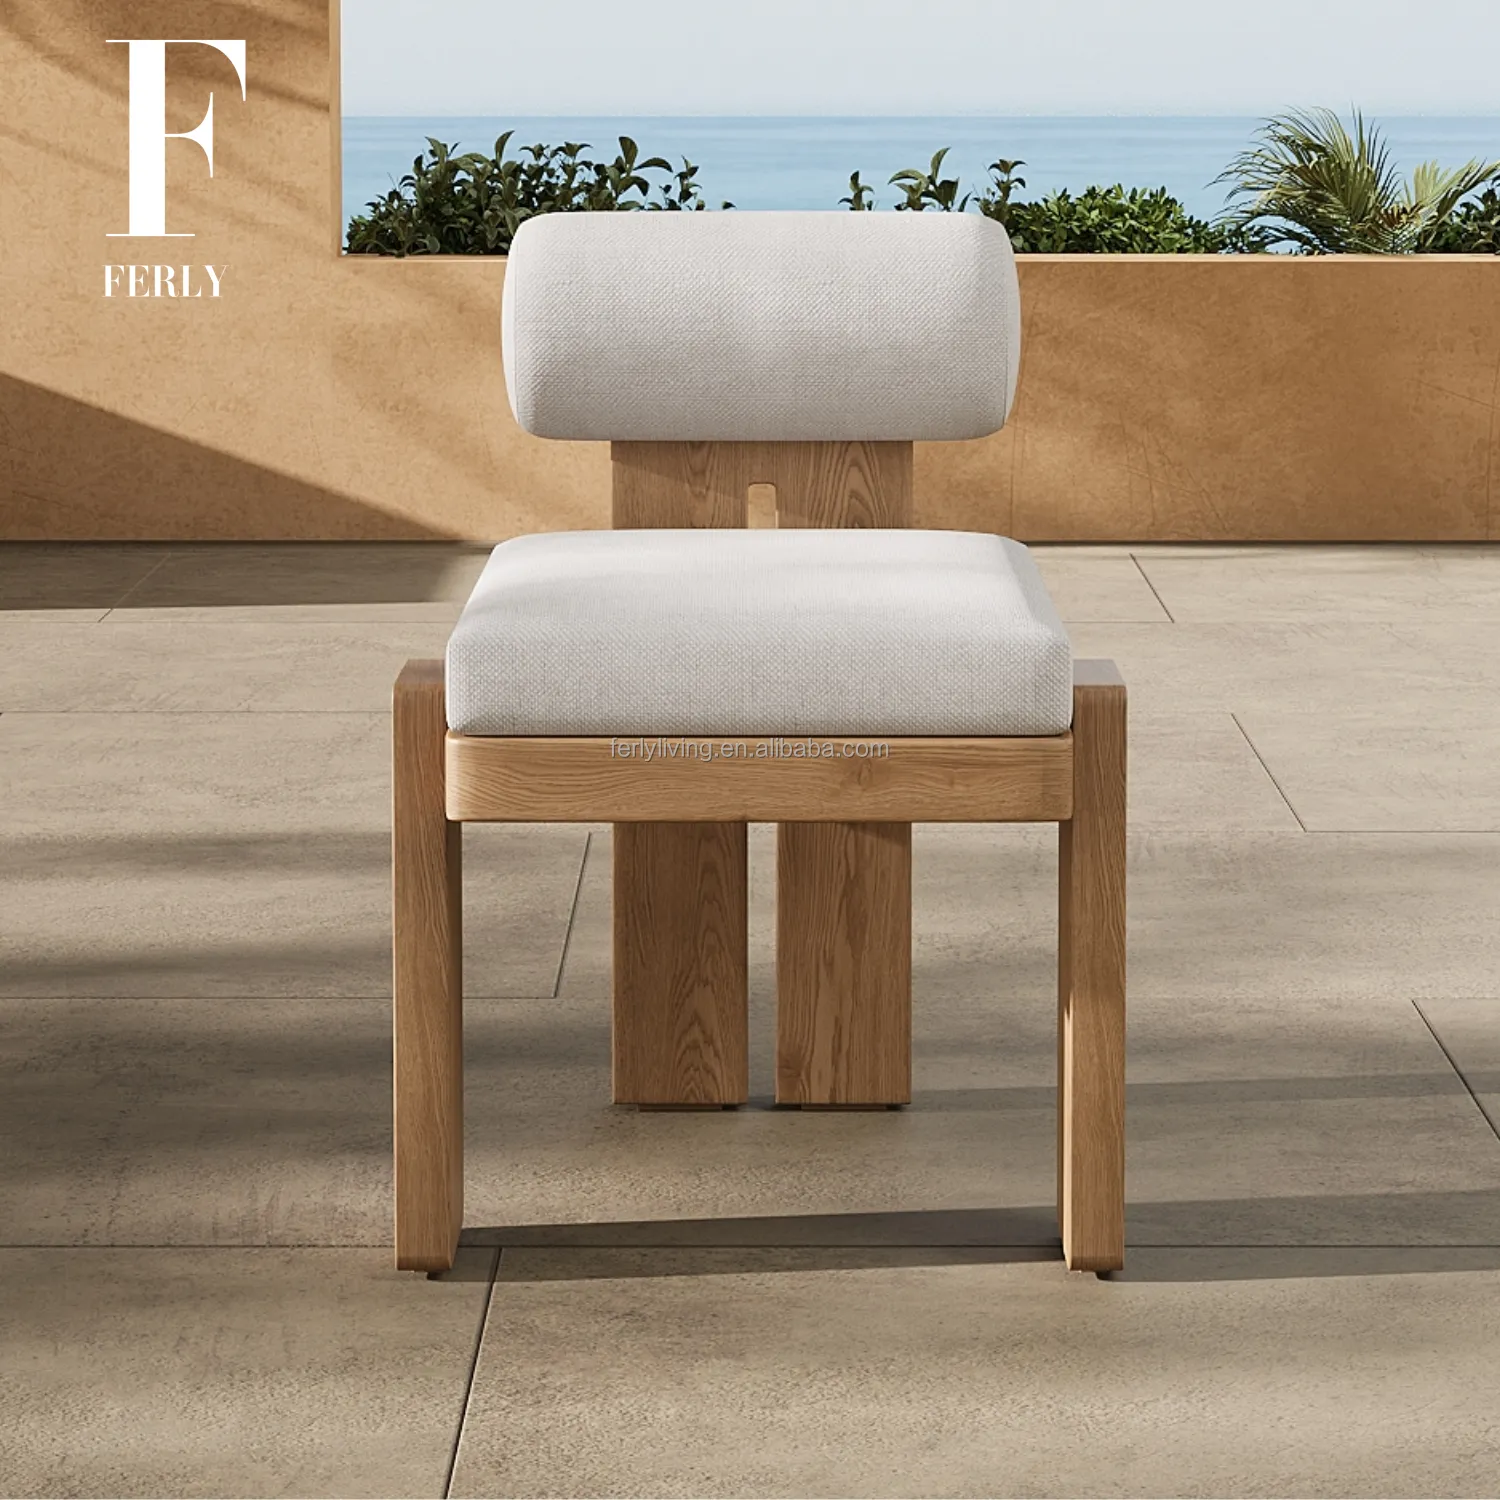 تصميم جديد للمقاعد العصرية FERLY للاستخدام الخارجي في الحديقة كرسي بذراعين مستورد